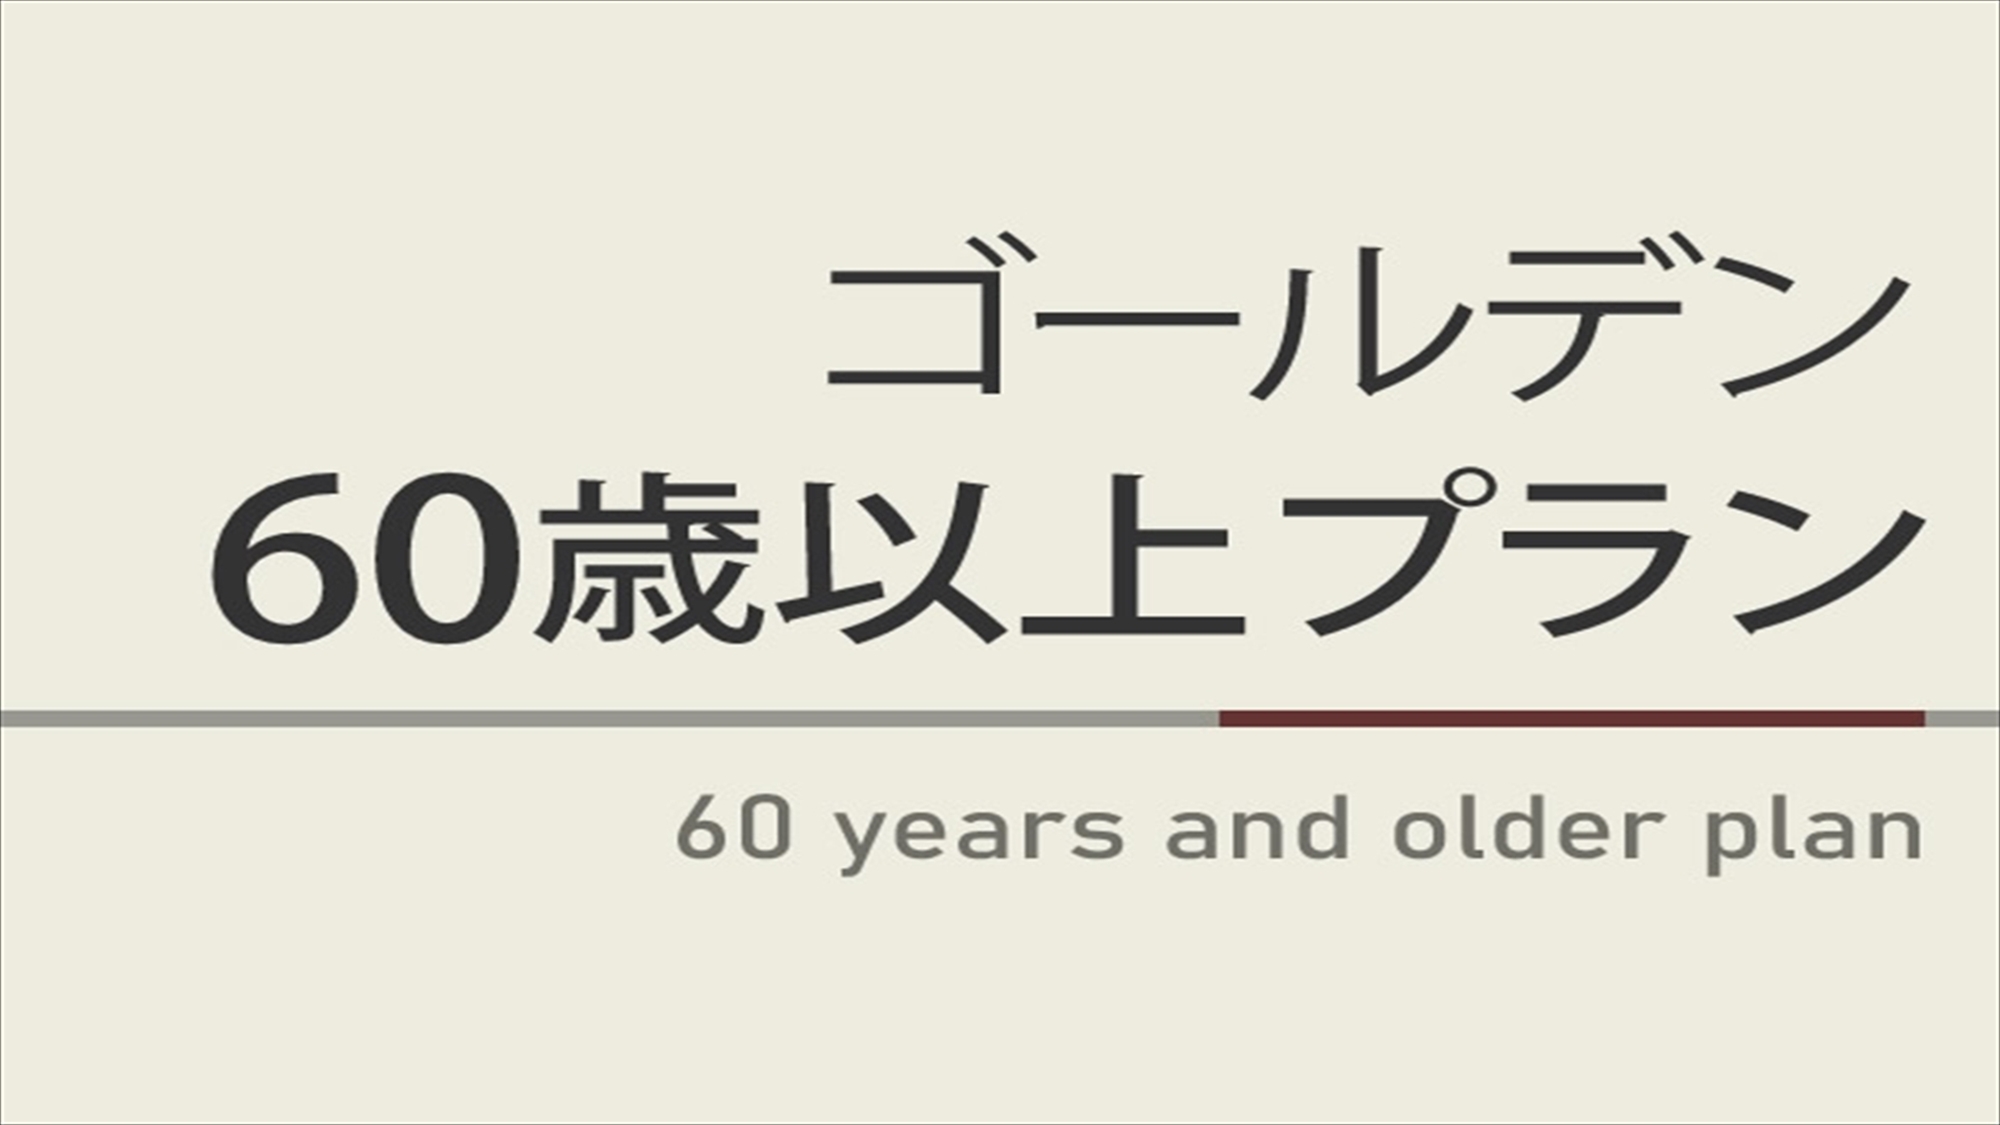 【曜日限定割引特典】ゴールデン60歳以上プラン☆朝食ビュッフェ